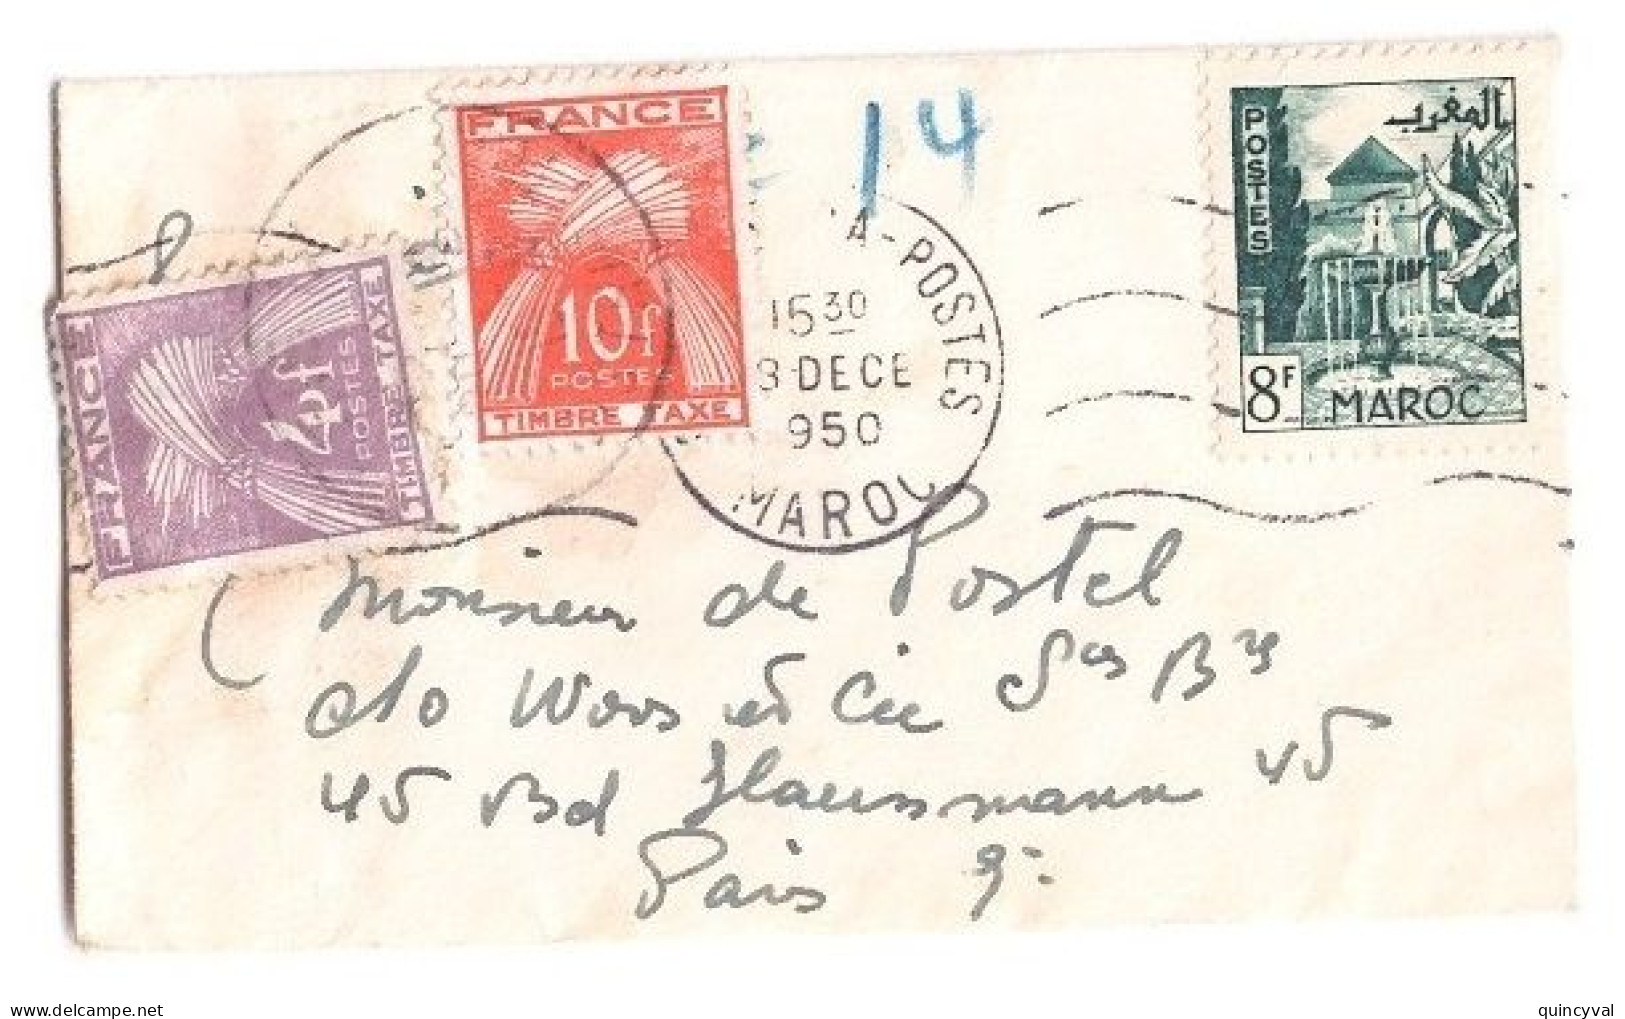 PARIS Carte De Visite Mignonnette Origine Maroc Affranchie 8 F Taxe 14 F Gerbes Yv T 86 84 Ob 1950 - 1859-1959 Covers & Documents